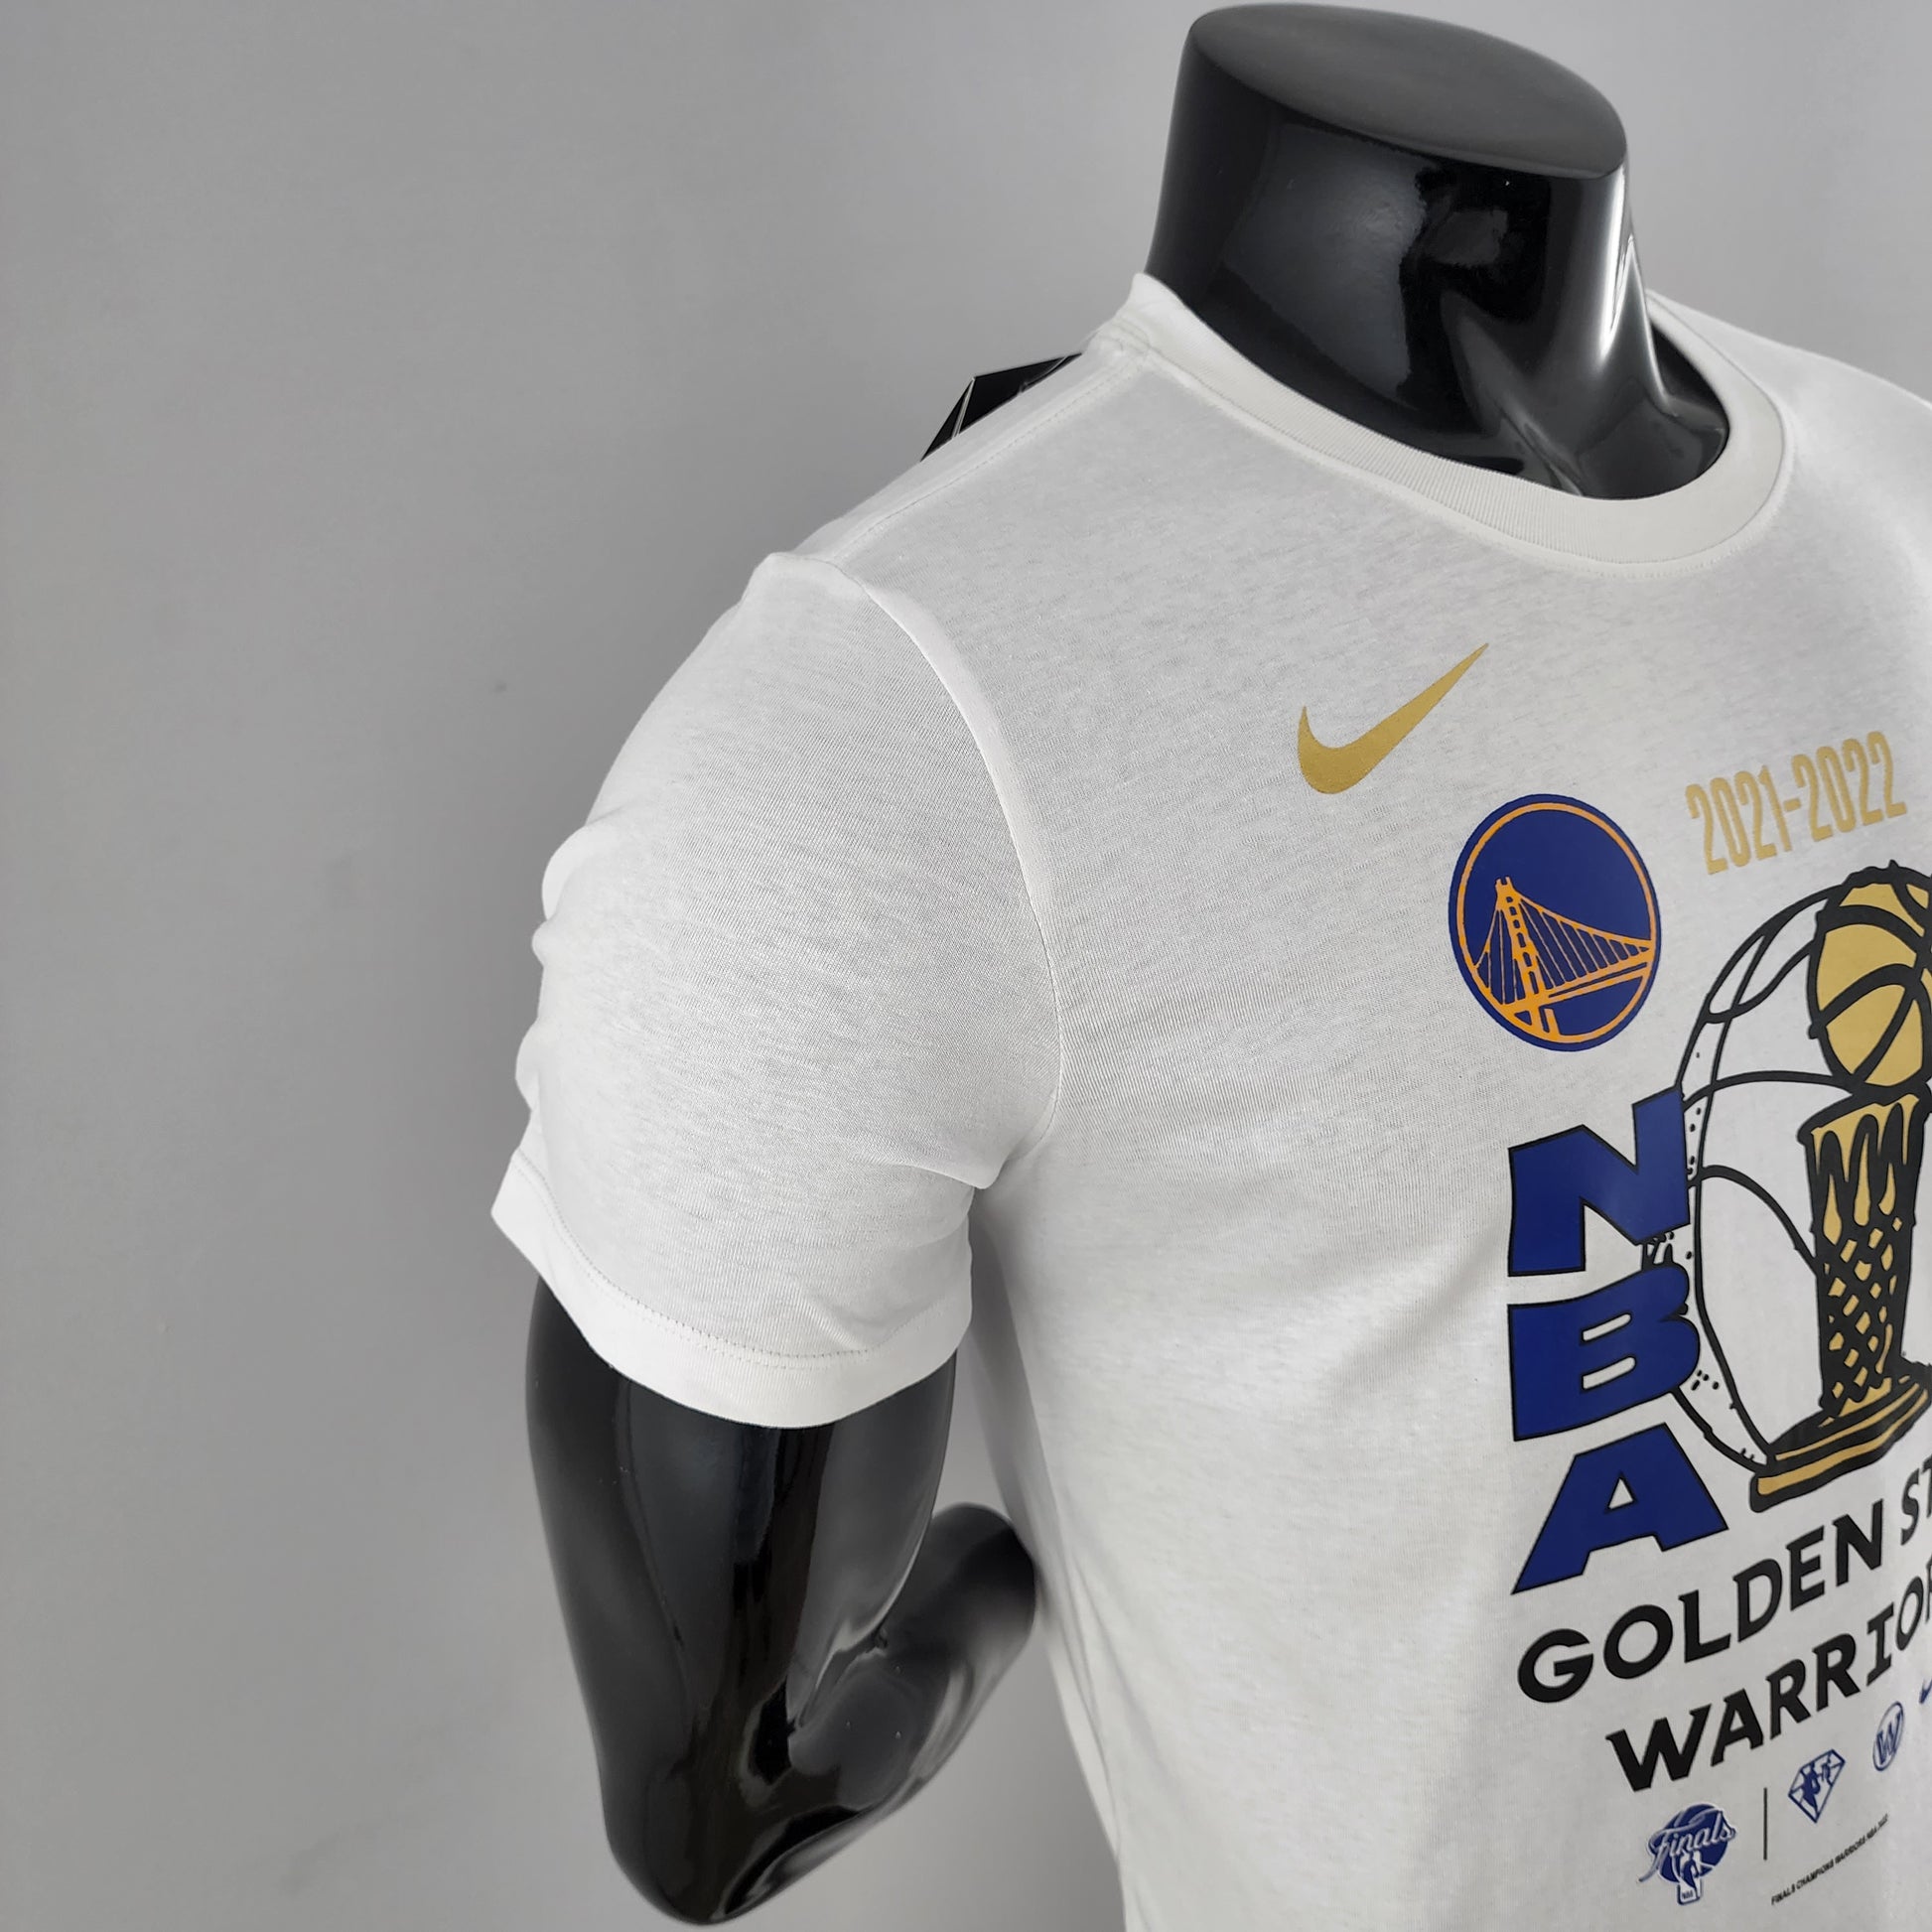 Mens Golden State Warriors T-Shirts, Warriors Finals Champs Locker